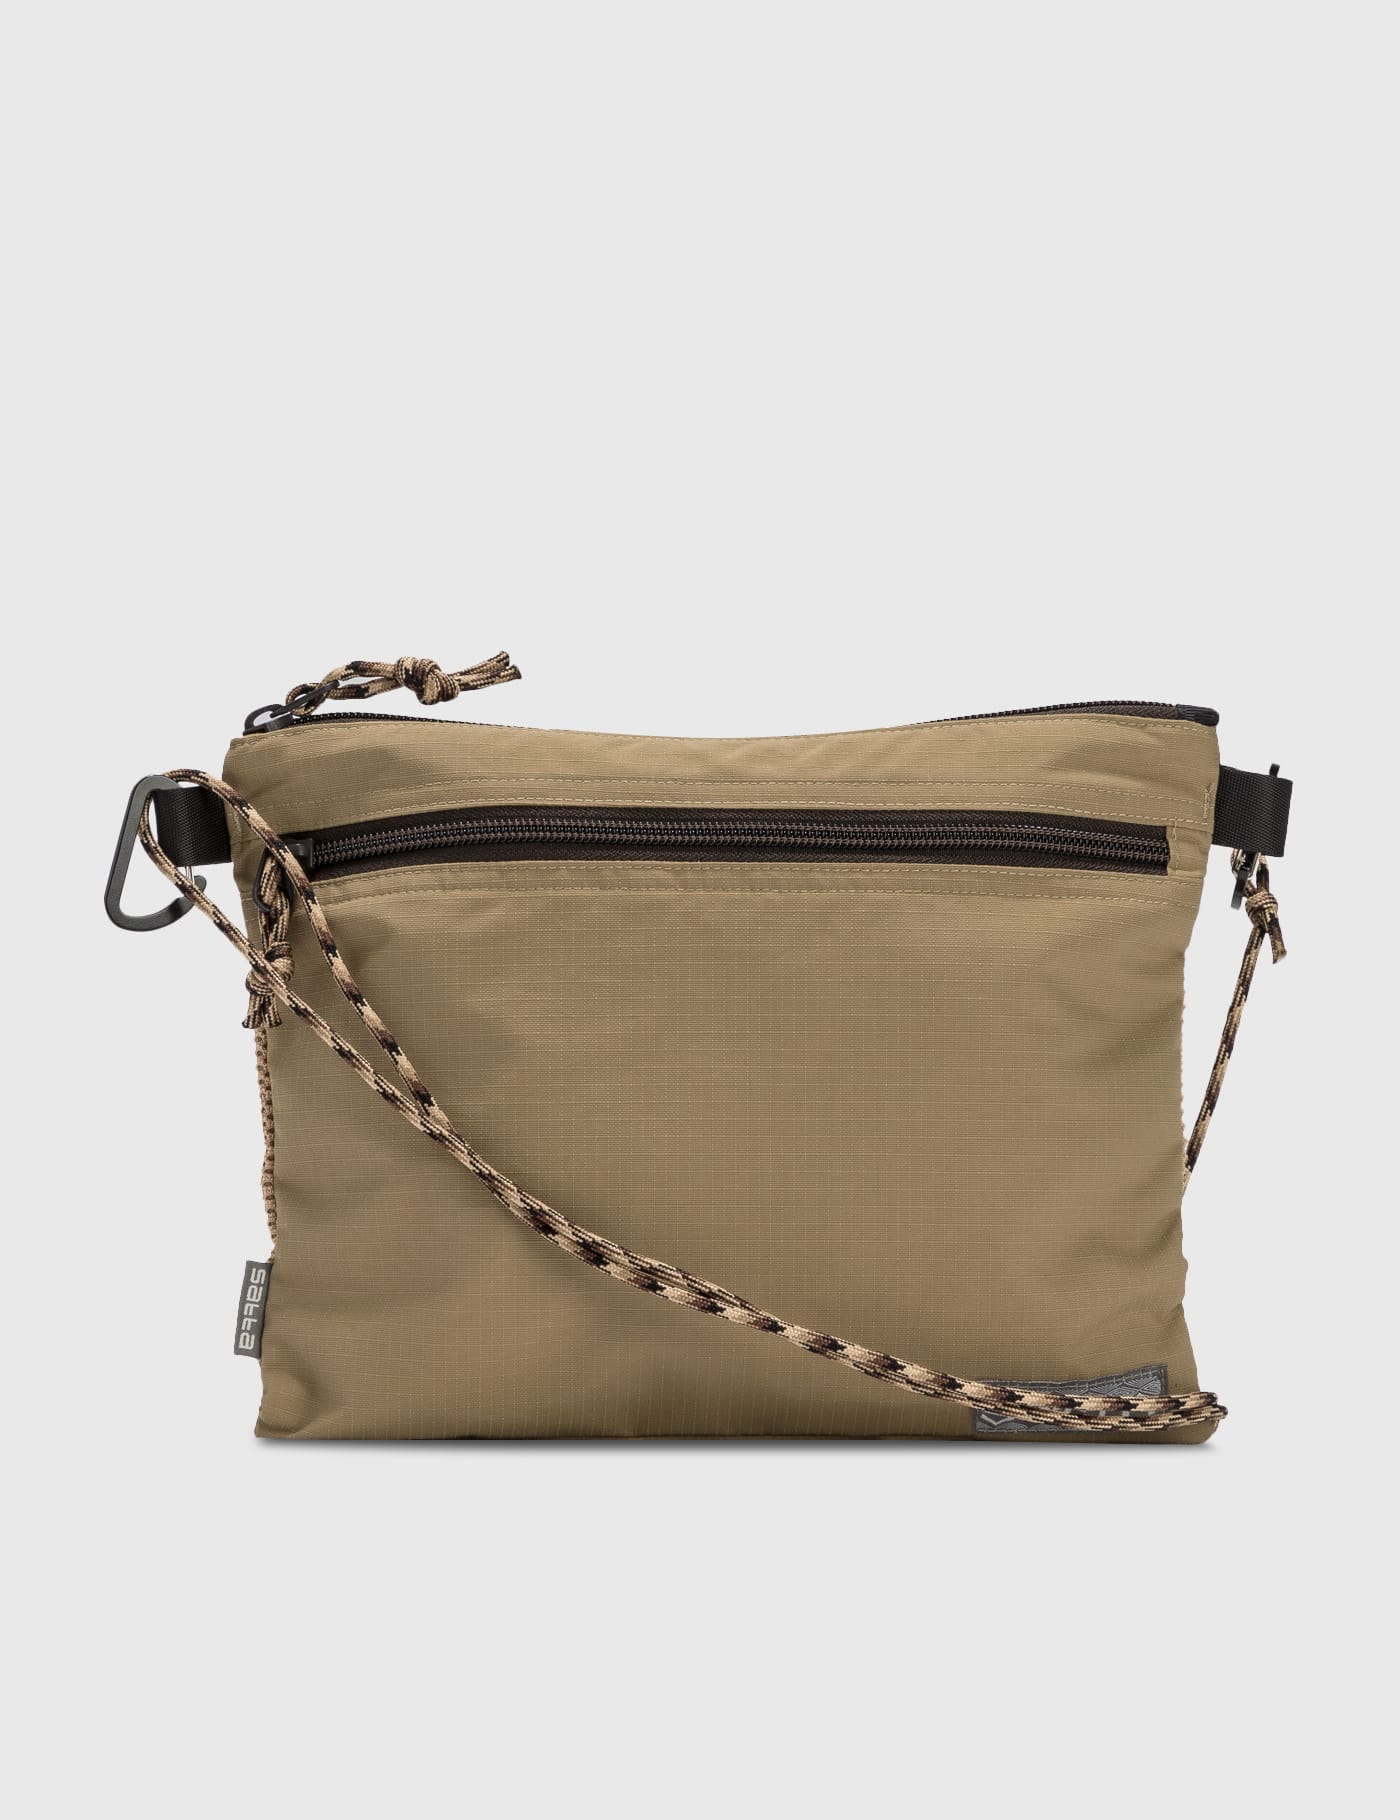 Maison Margiela - 5AC XL Soft Beauty Bag | HBX - Globally Curated 